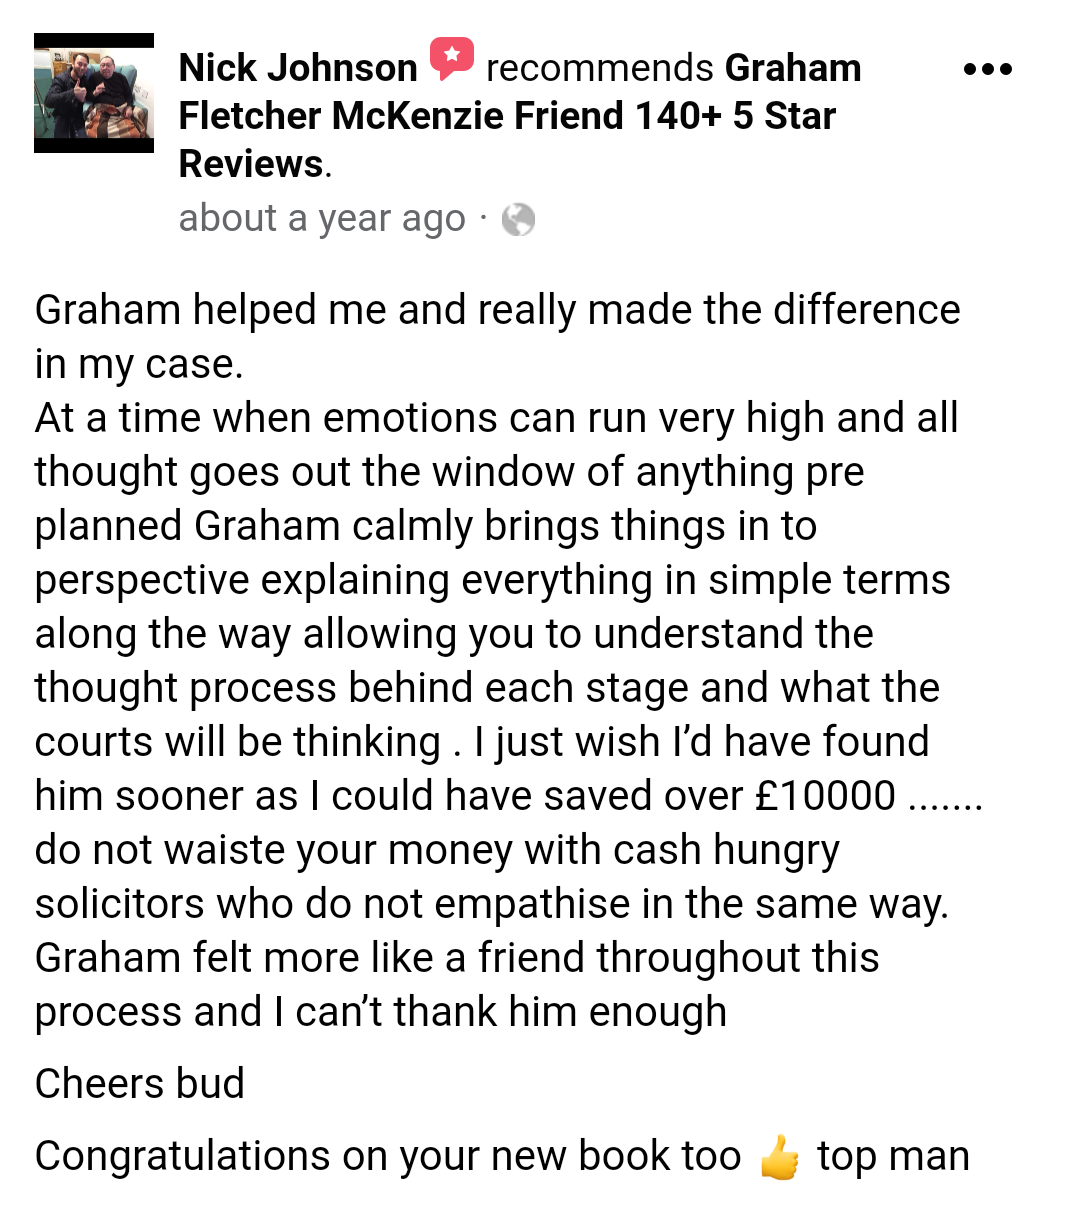 5 star facebook mckenzie friend review from mr nick johnson